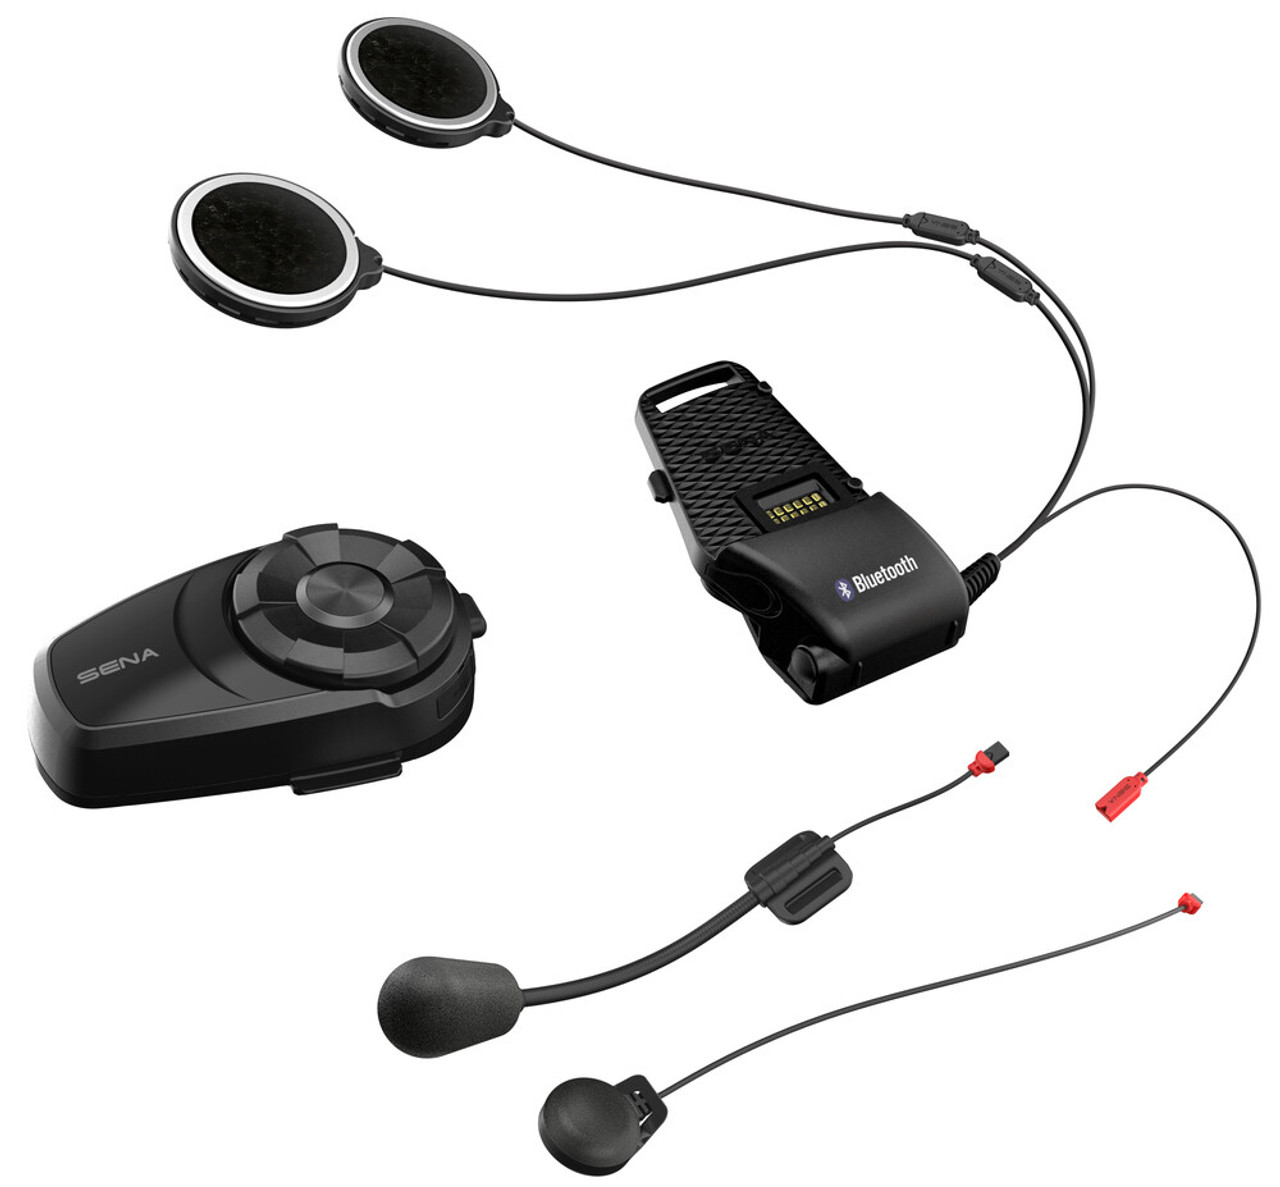 Cardo Freecom 4X Bluetooth Headset Review at SpeedAddicts.com 